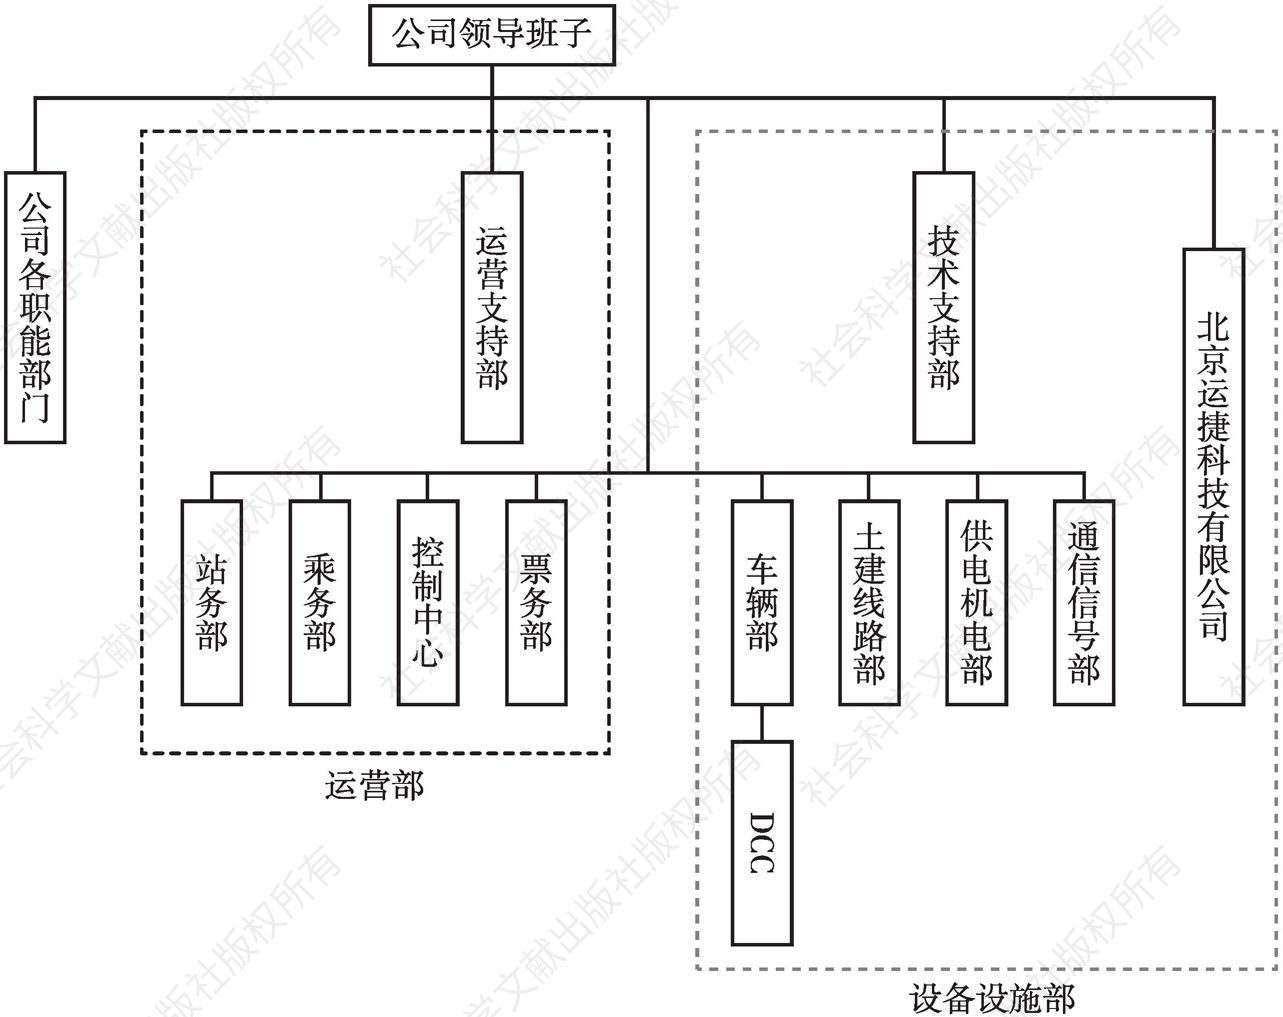 图3 北京燕房线运维管理架构示意